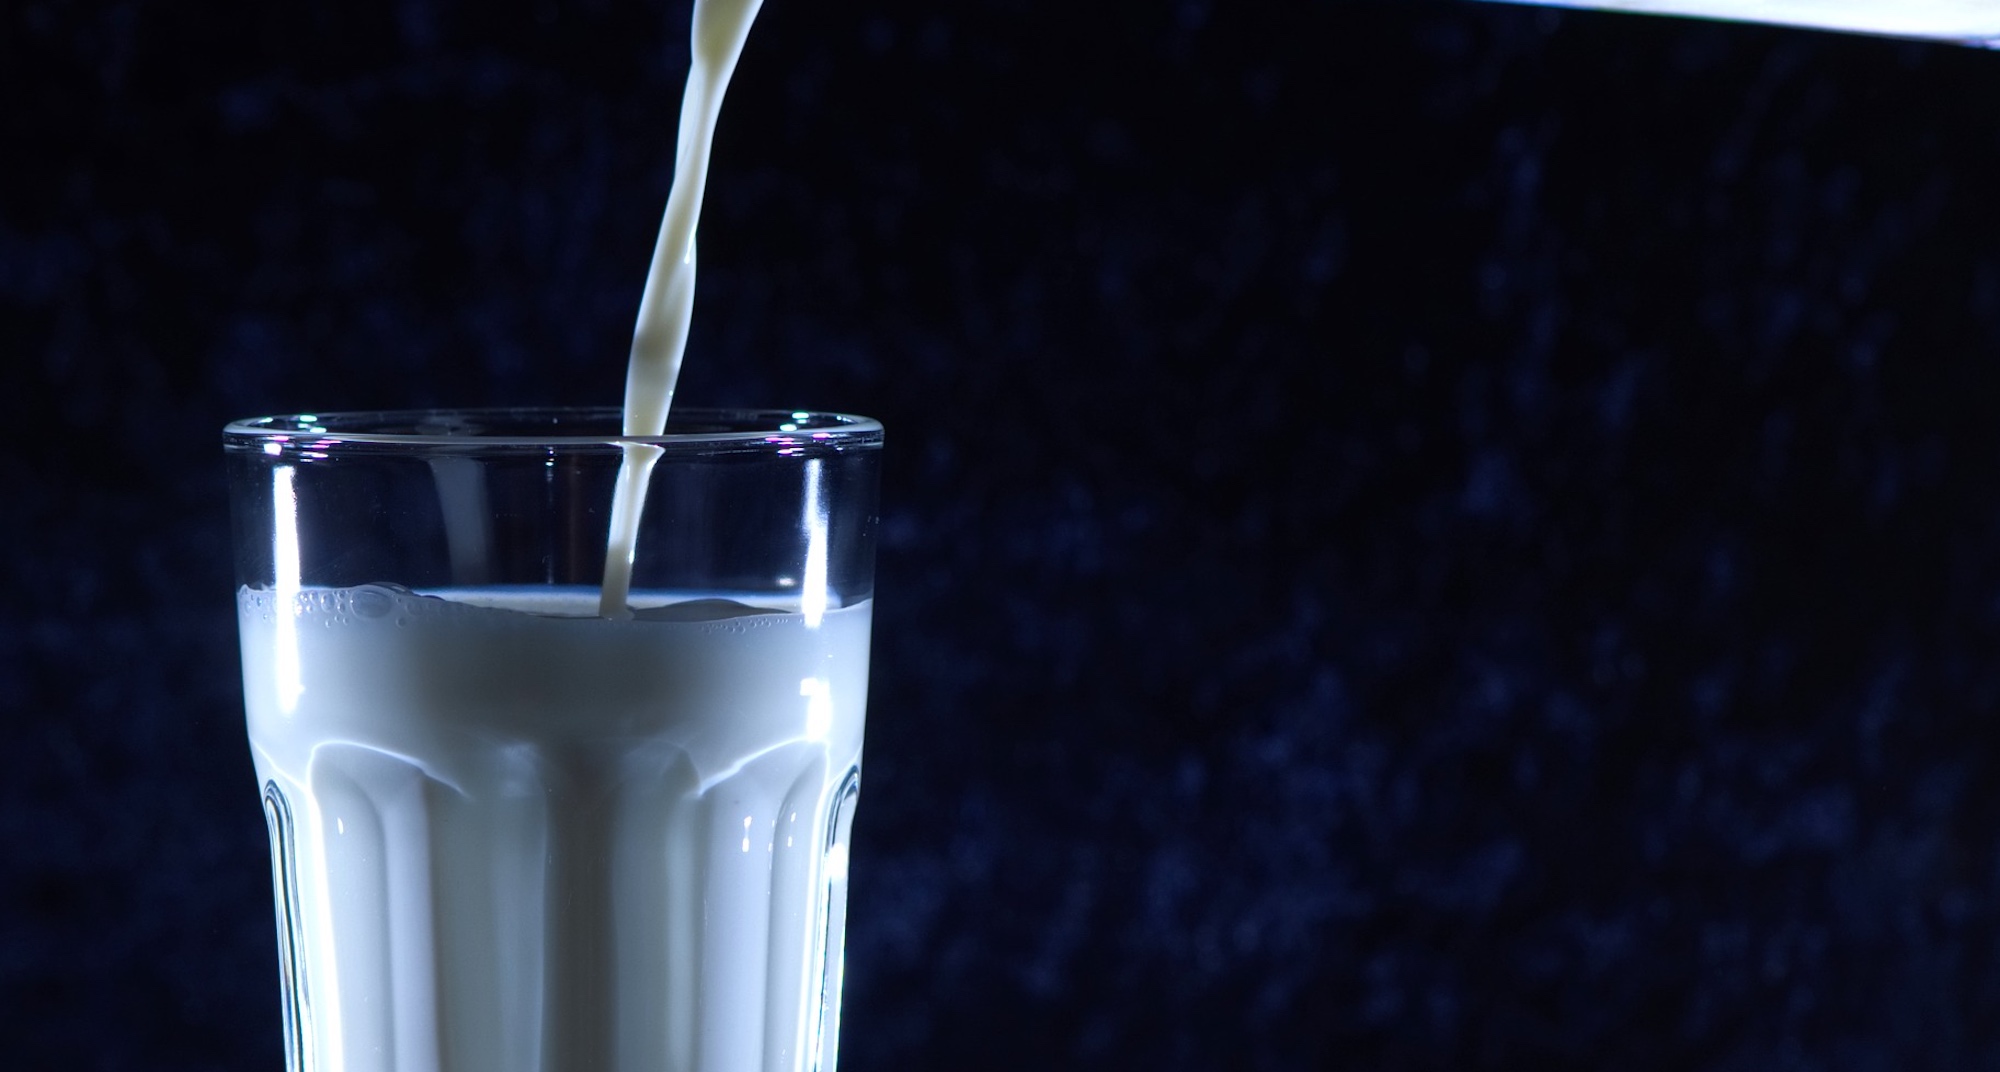 Ingesta de lácteos reduce riesgo de diabetes